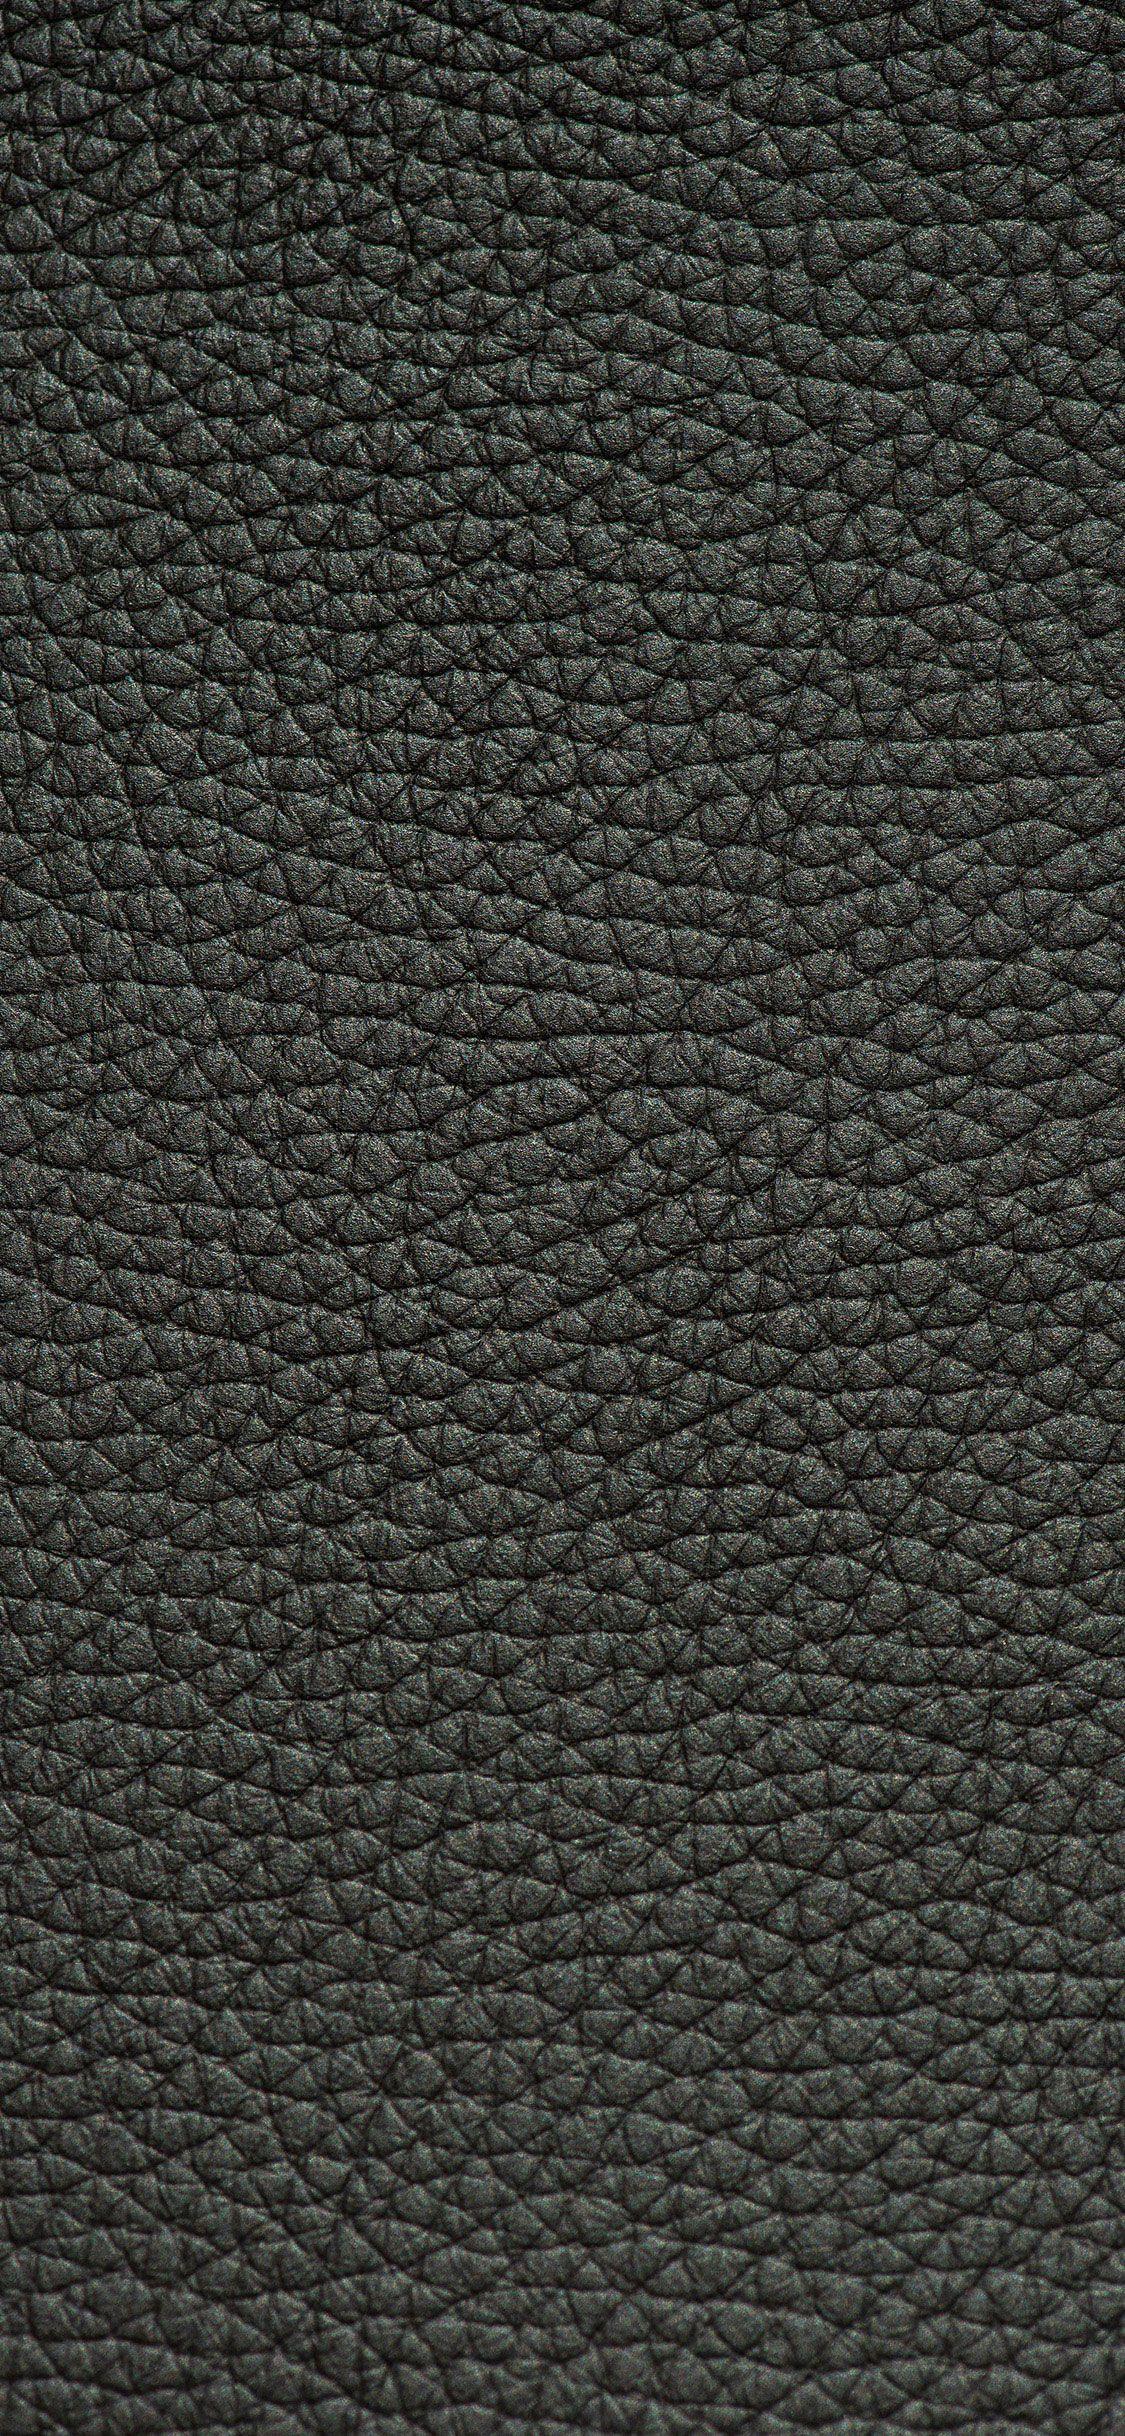 74 Leather Apple Wallpaper  WallpaperSafari